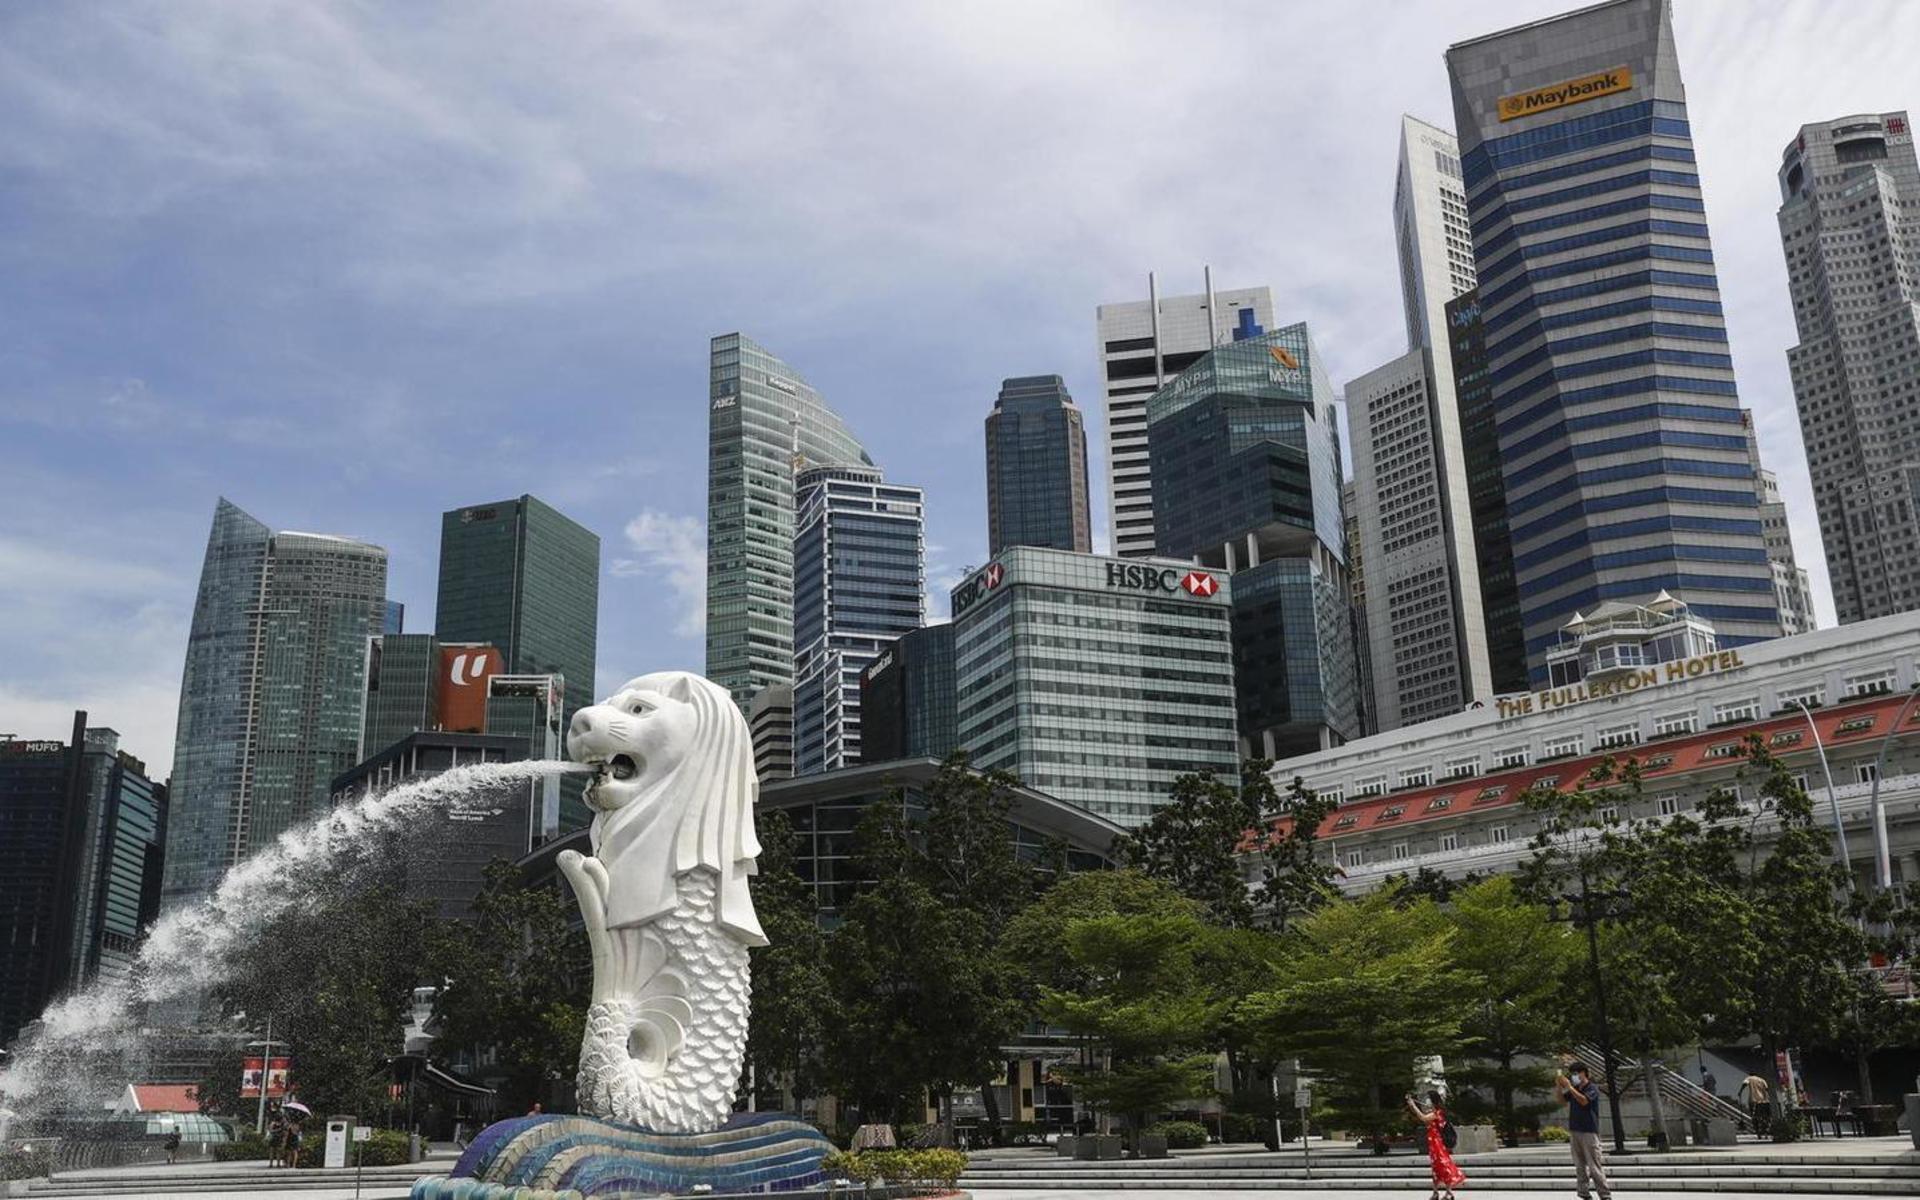 Singapore har tröttnat på människor som skräpar ner, och därför vidtagit strikta åtgärder för att stoppa detta. Under 2020 utfärdades omkring 19 000 böteslappar för nedskräpning i landet. Systemet är uppbyggt så att återfallsförbrytare får högre bötesbelopp.